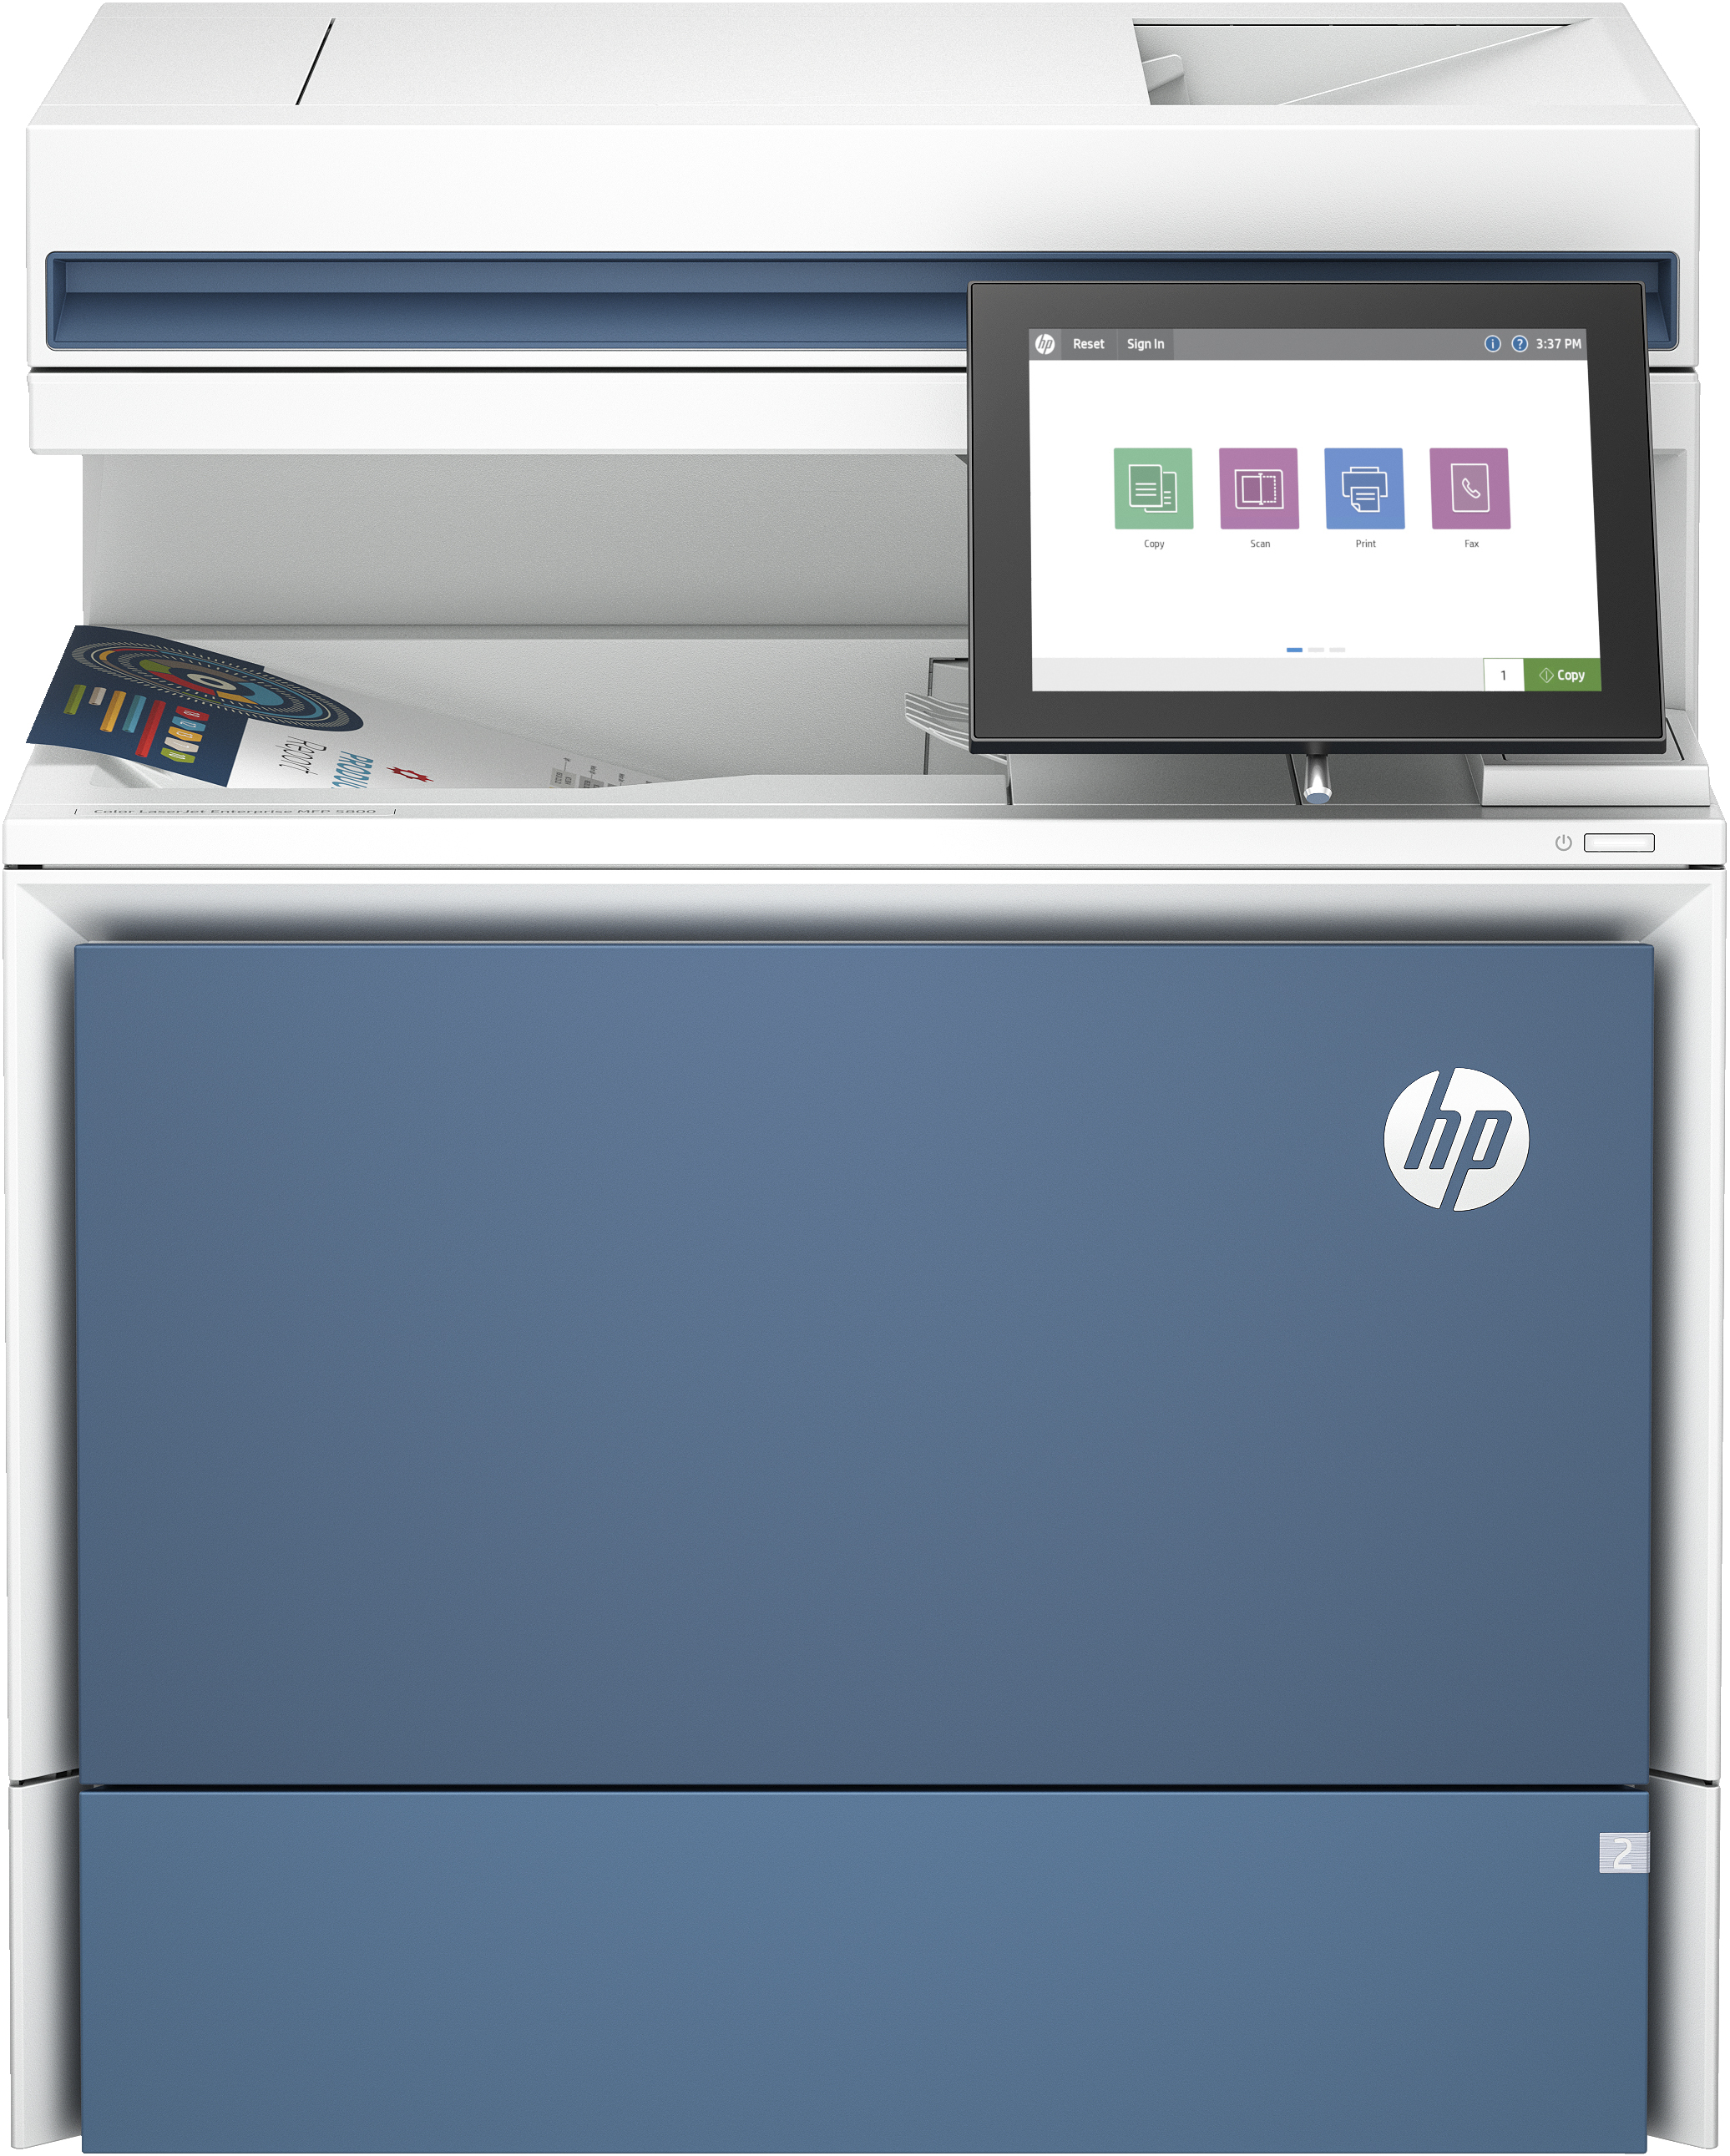 HP LaserJet Stampante multifunzione Color Enterprise 5800dn, Color, Stampante per Stampa, copia, scansione, fax (opzionale), Alimentatore automatico di documenti; vassoi ad alta capacità opzionali; touchscreen; cartuccia TerraJet